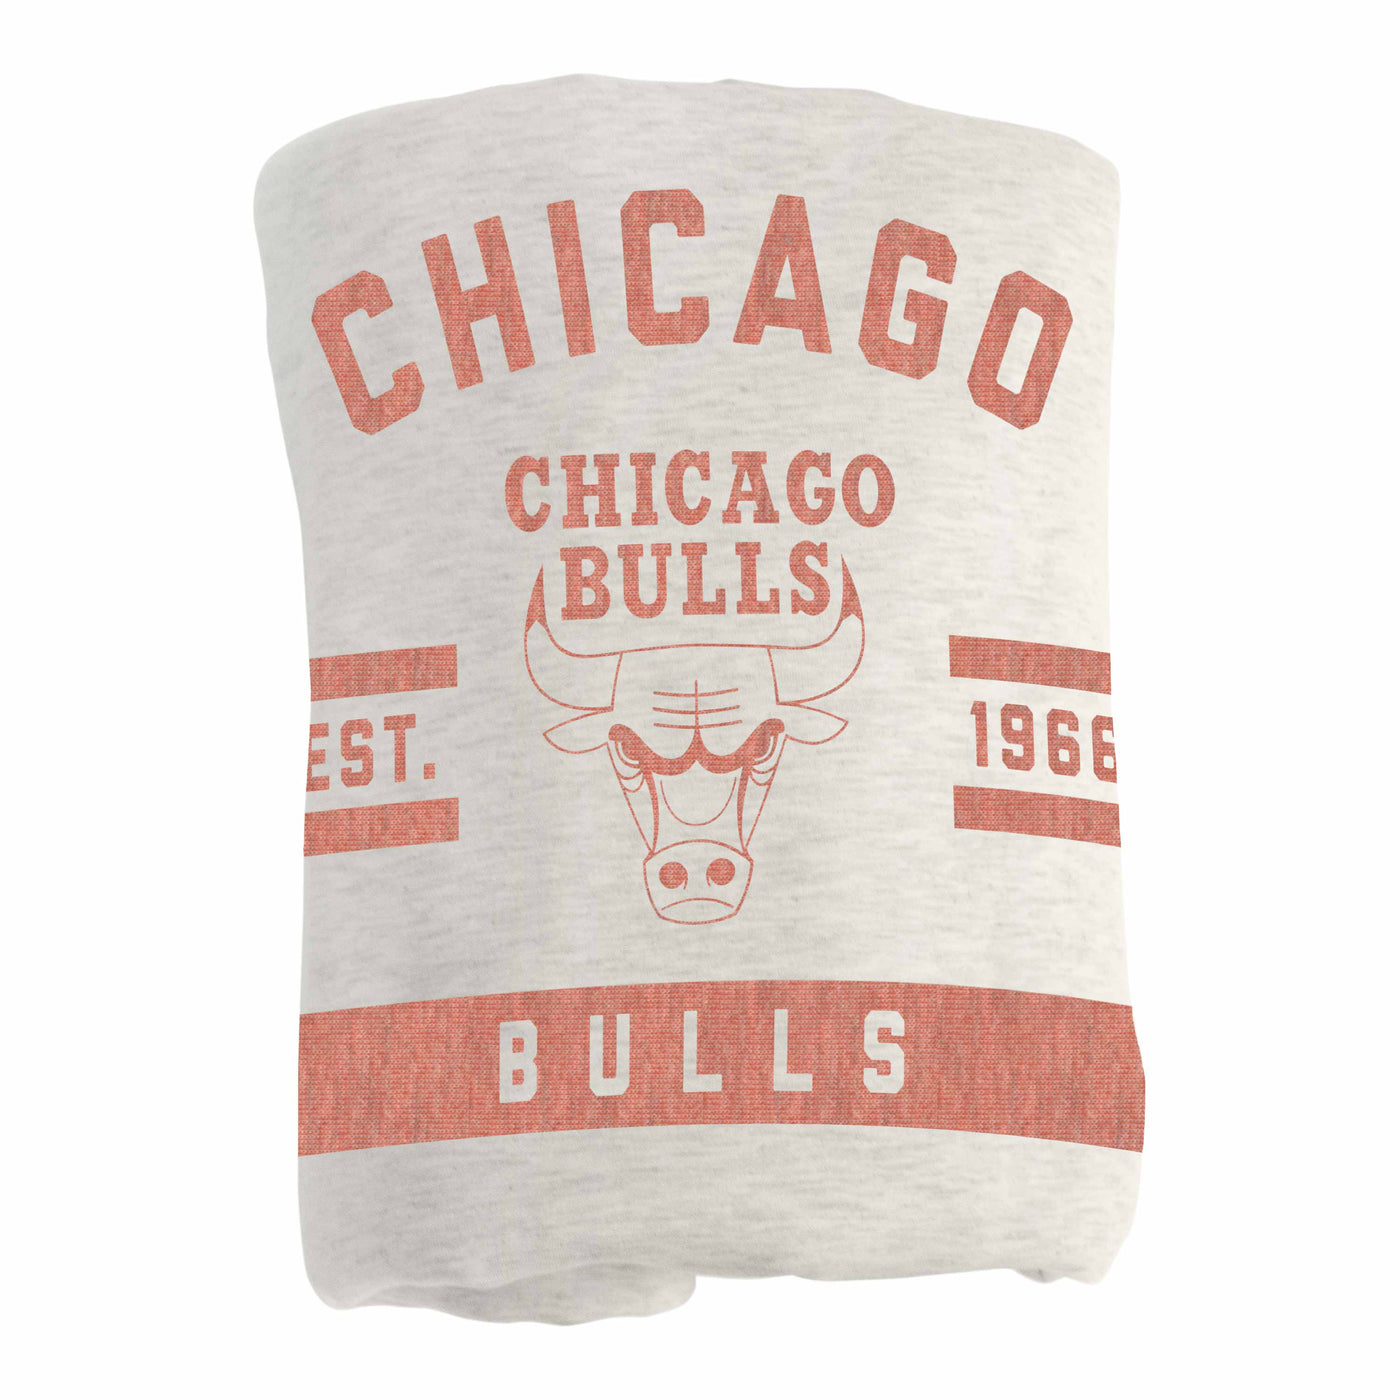 Chicago Bulls Oatmeal Sweatshirt Blanket